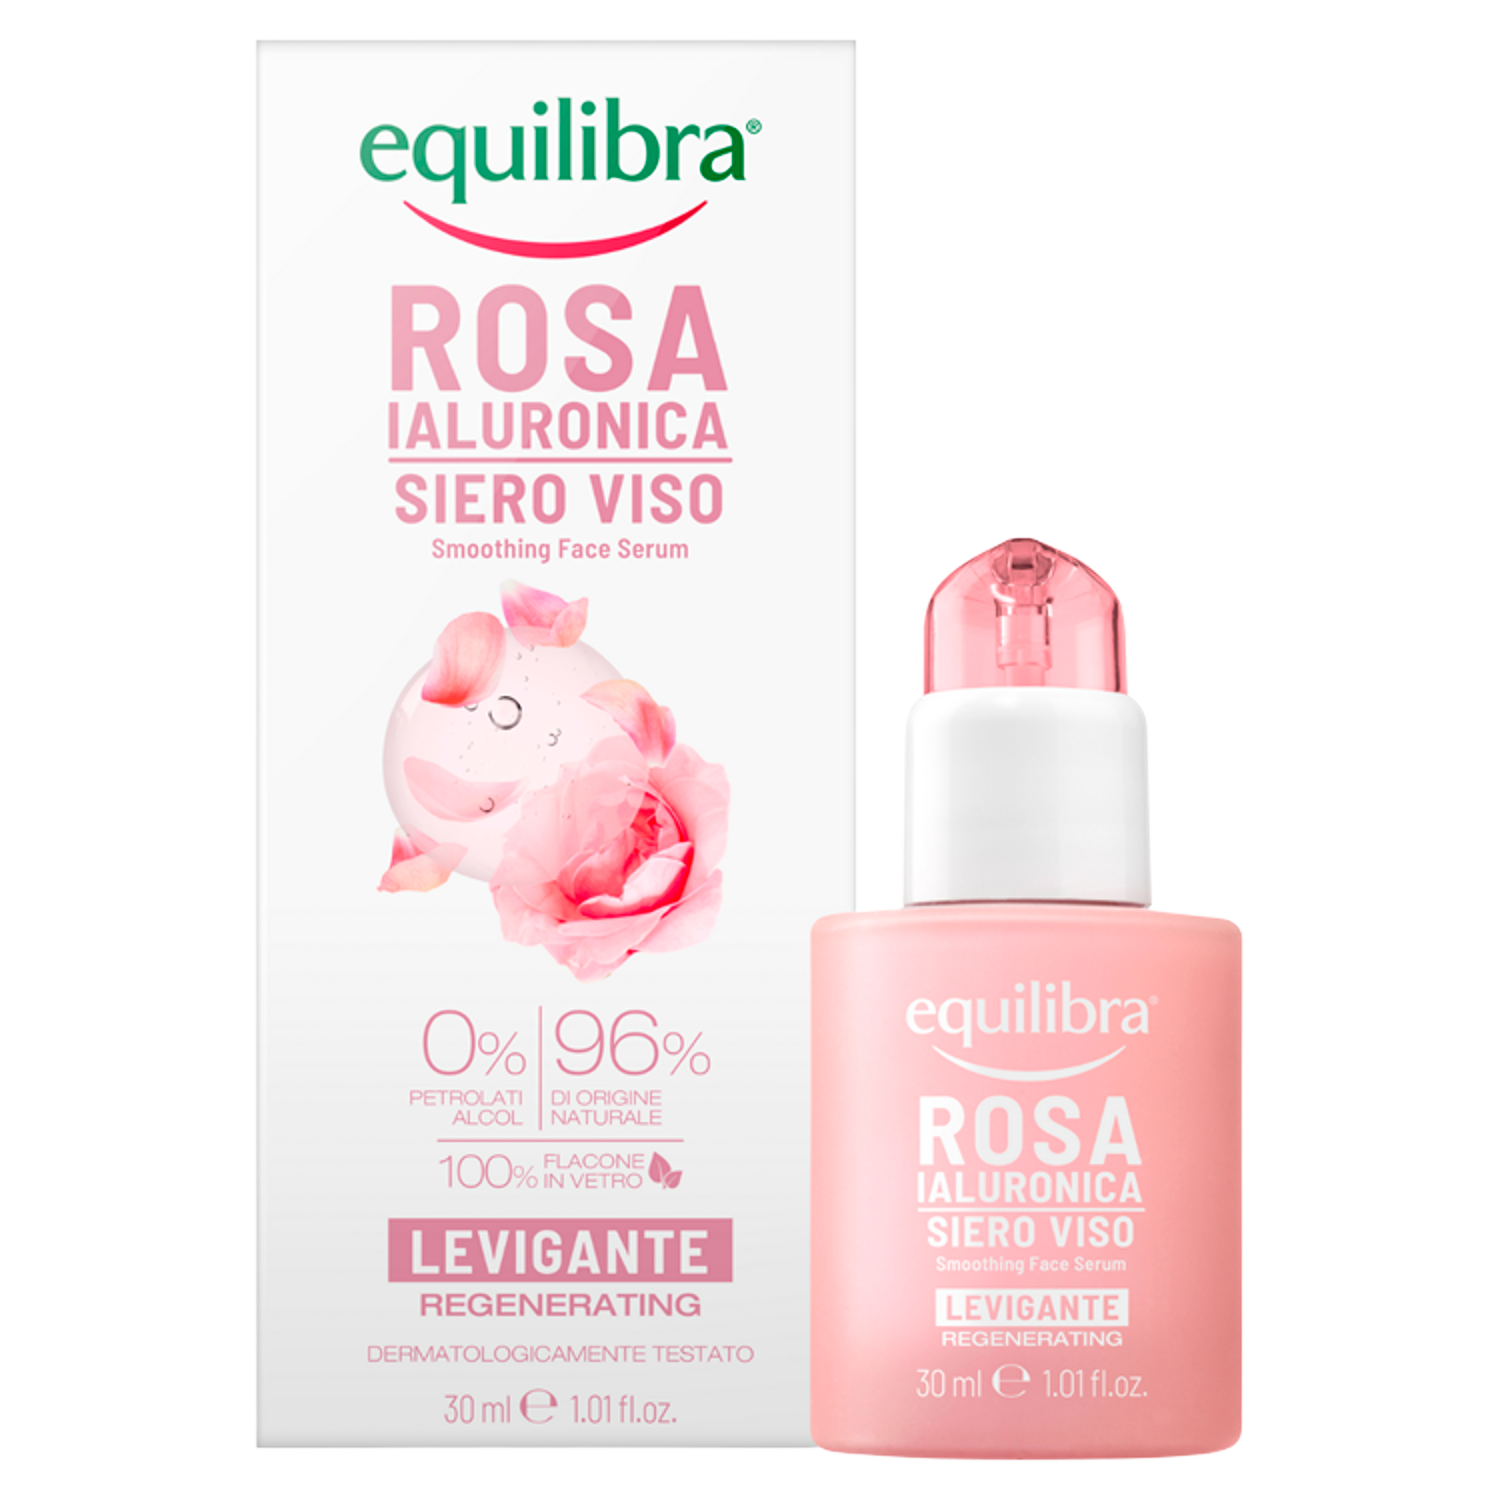 Equilibra Rosa разглаживающая розовая сыворотка для лица, 30 мл equilibra rosa освежающая розовая вода для лица 200 мл